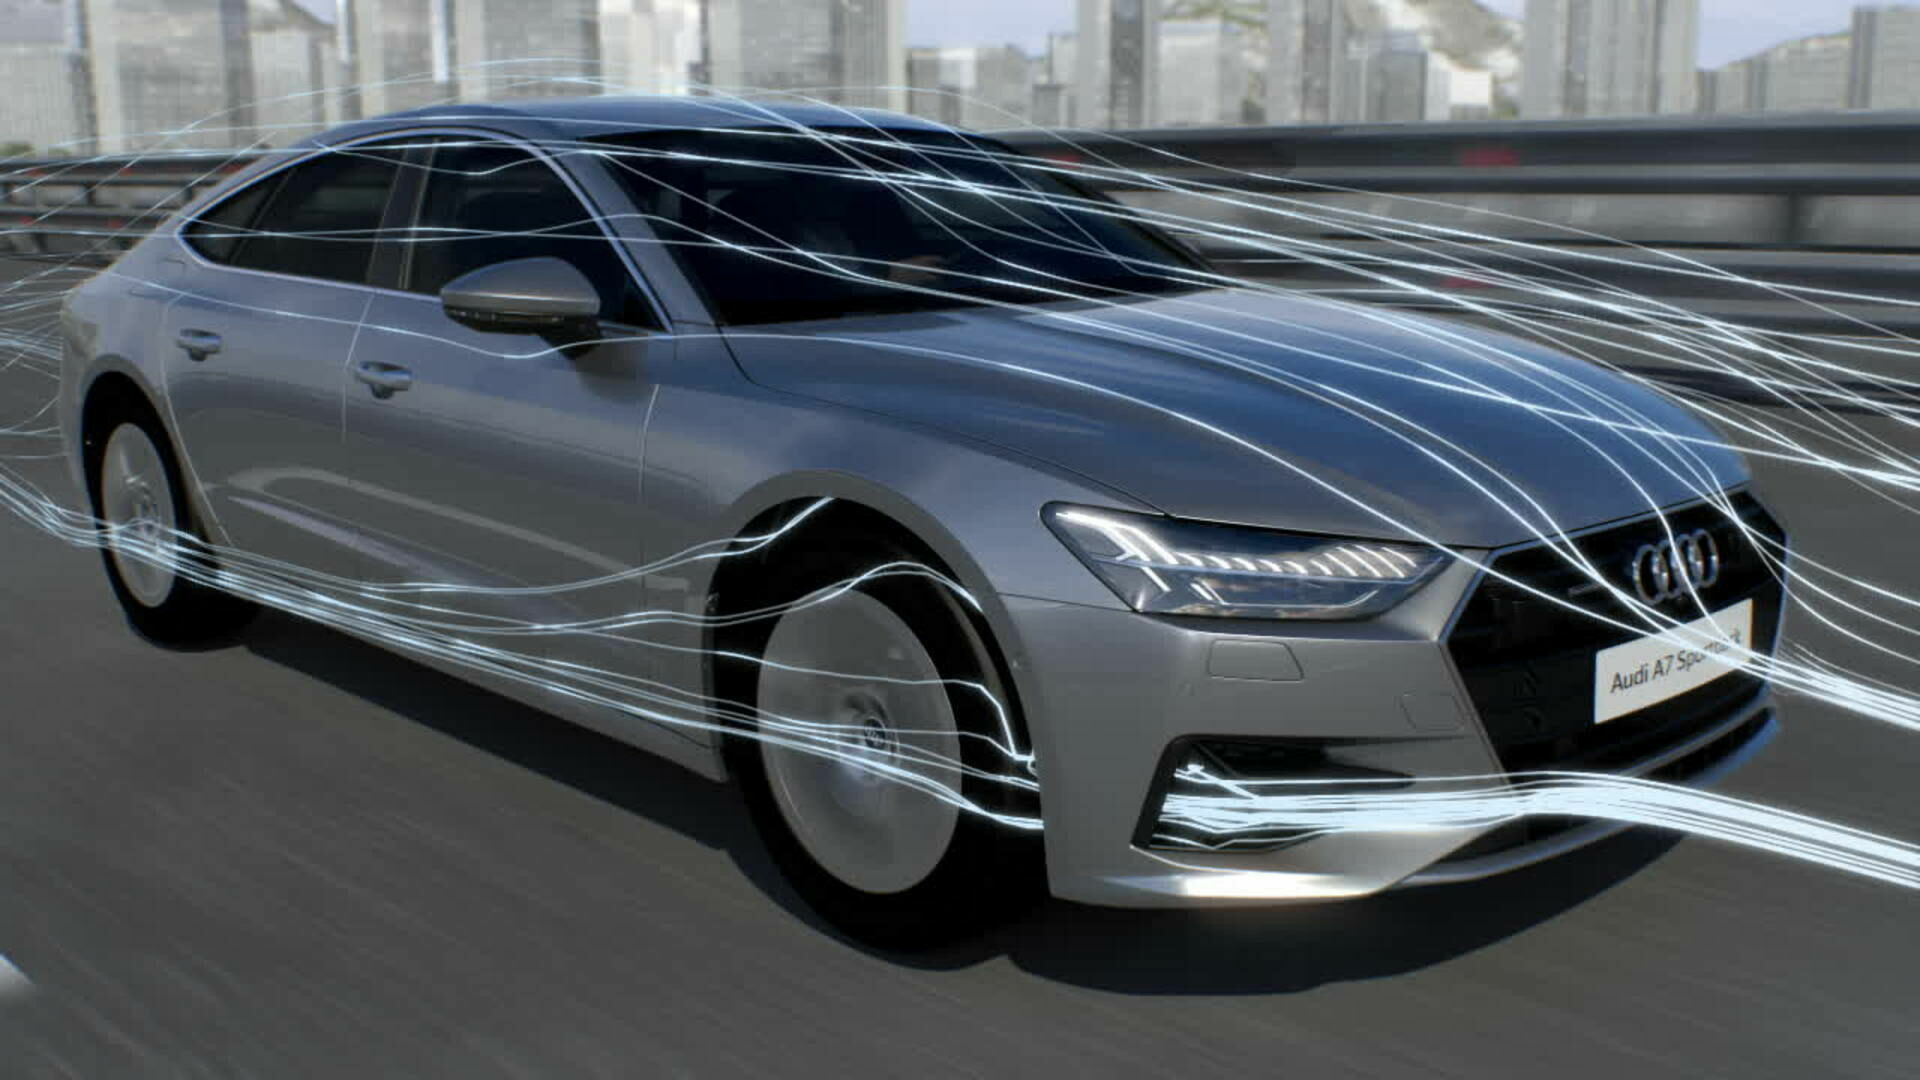 Audi A7 Animation aerodynamics